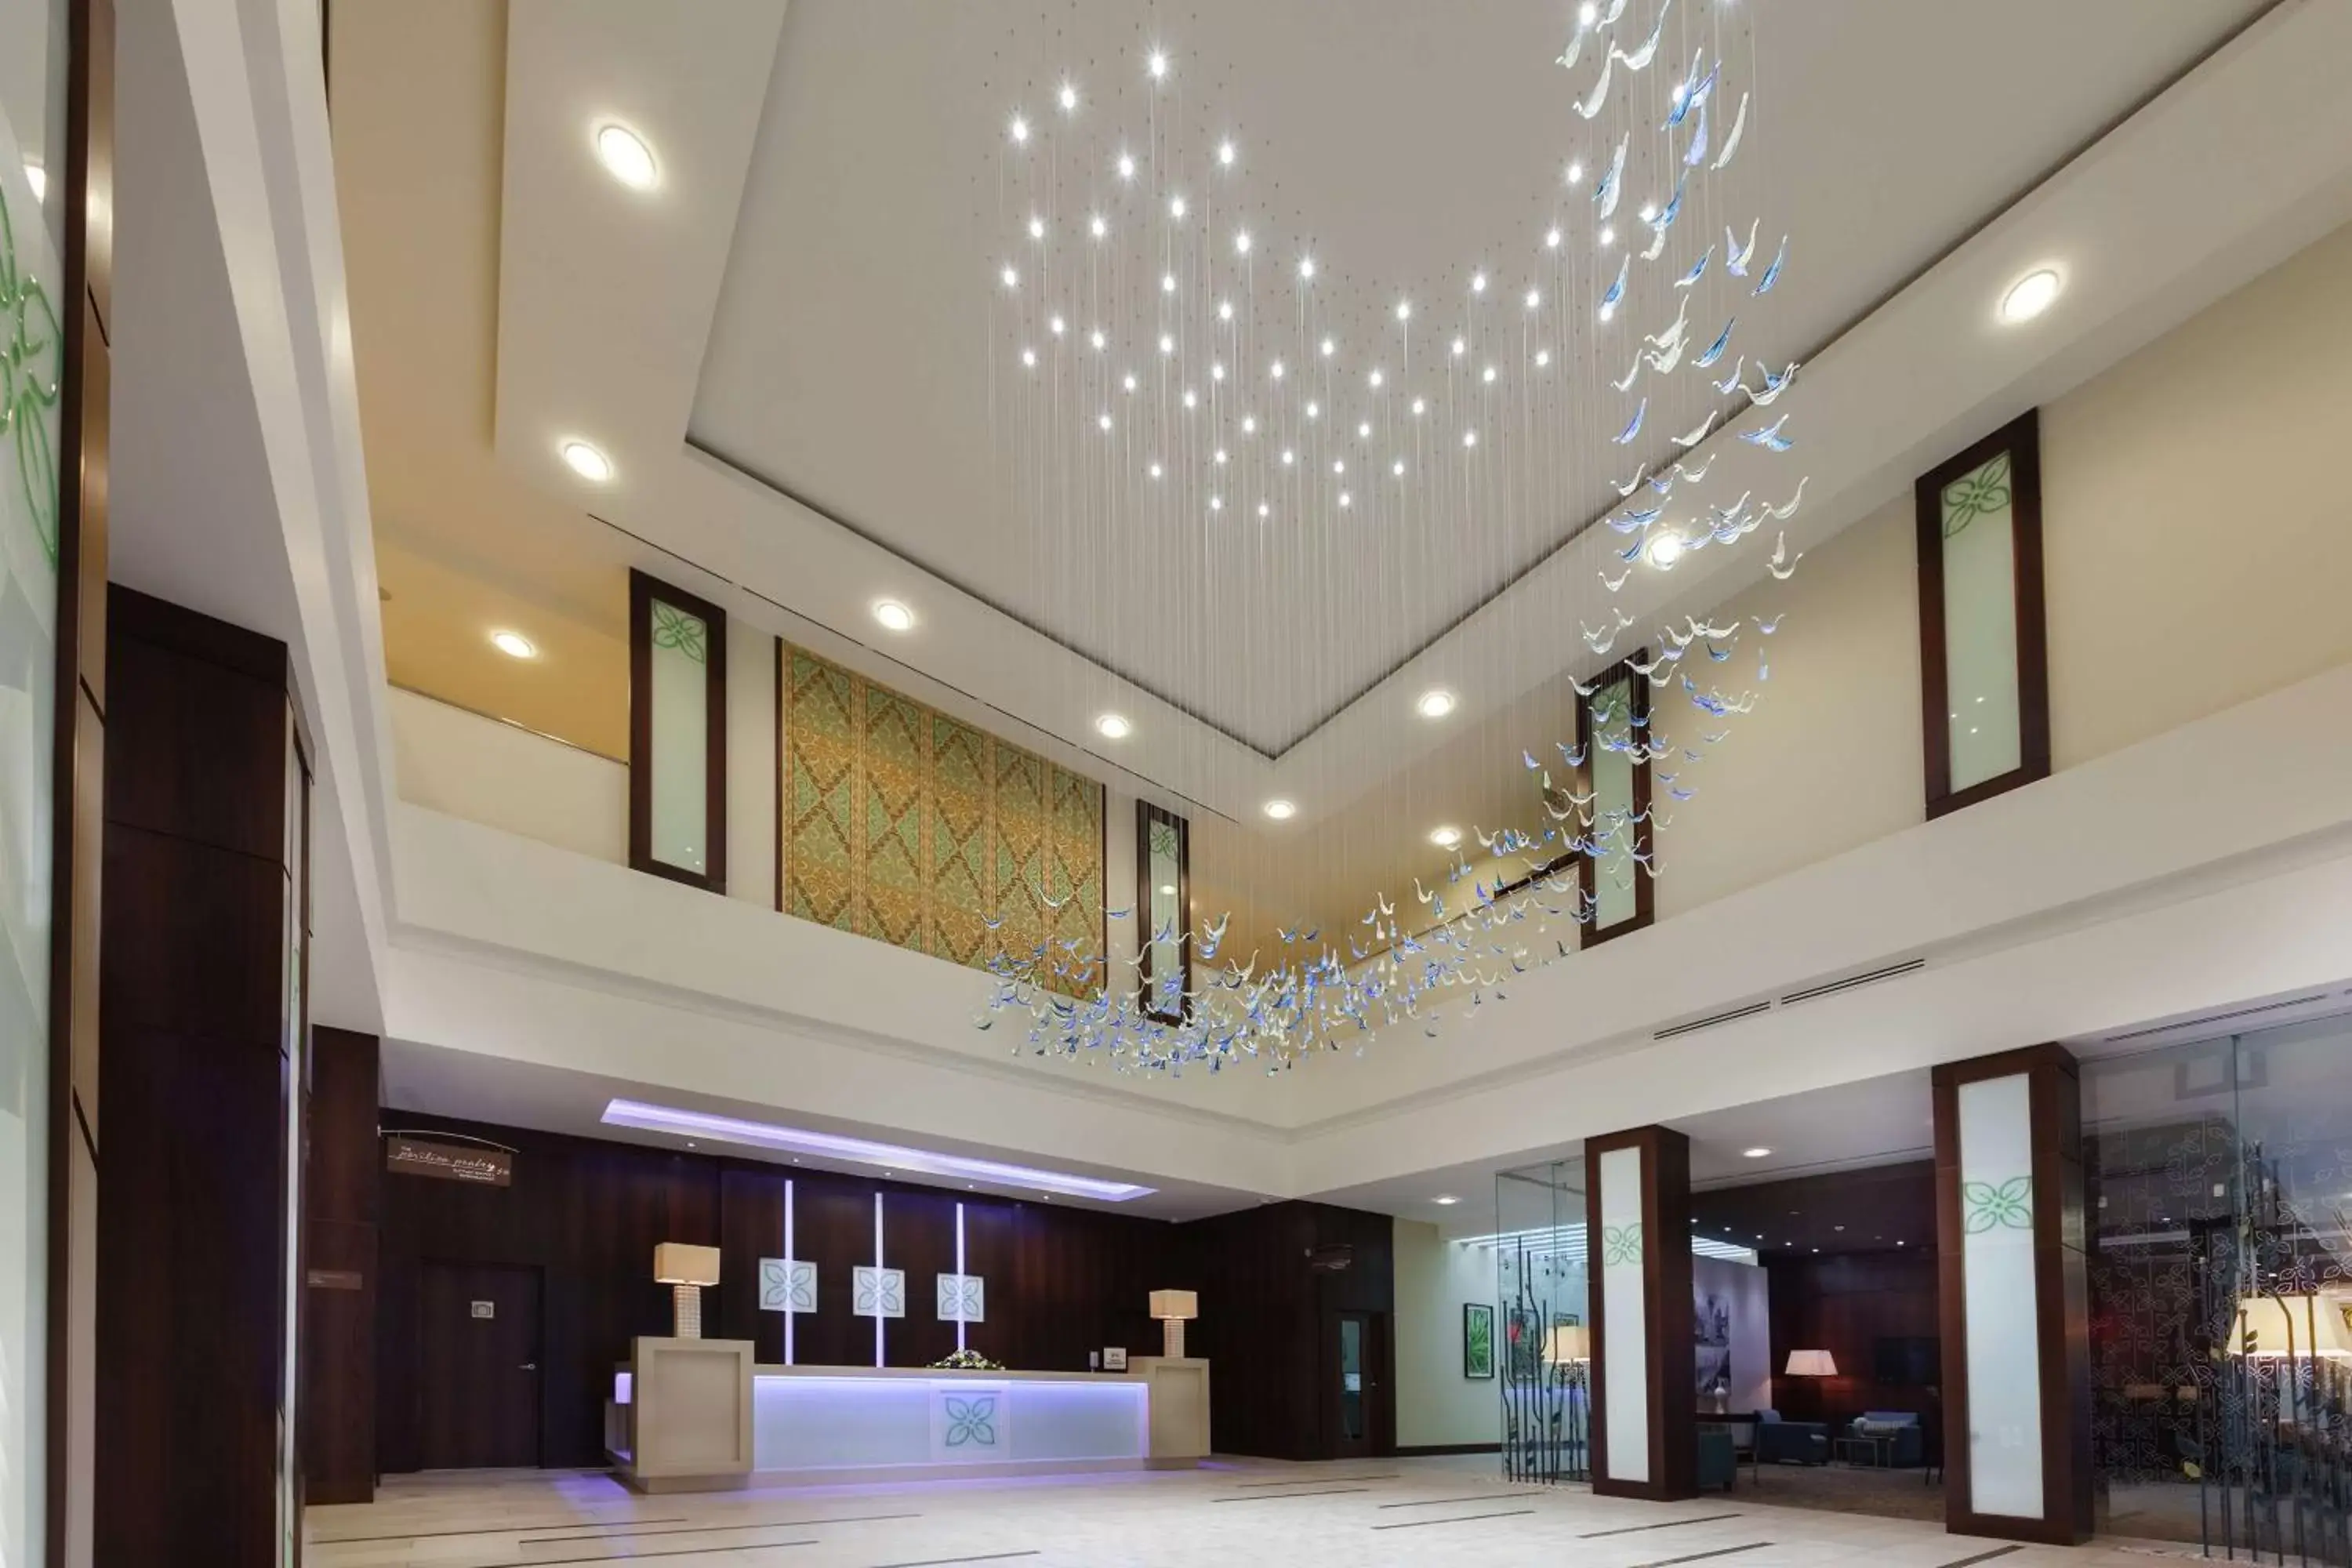 Lobby or reception, Lobby/Reception in Hilton Garden Inn Astana